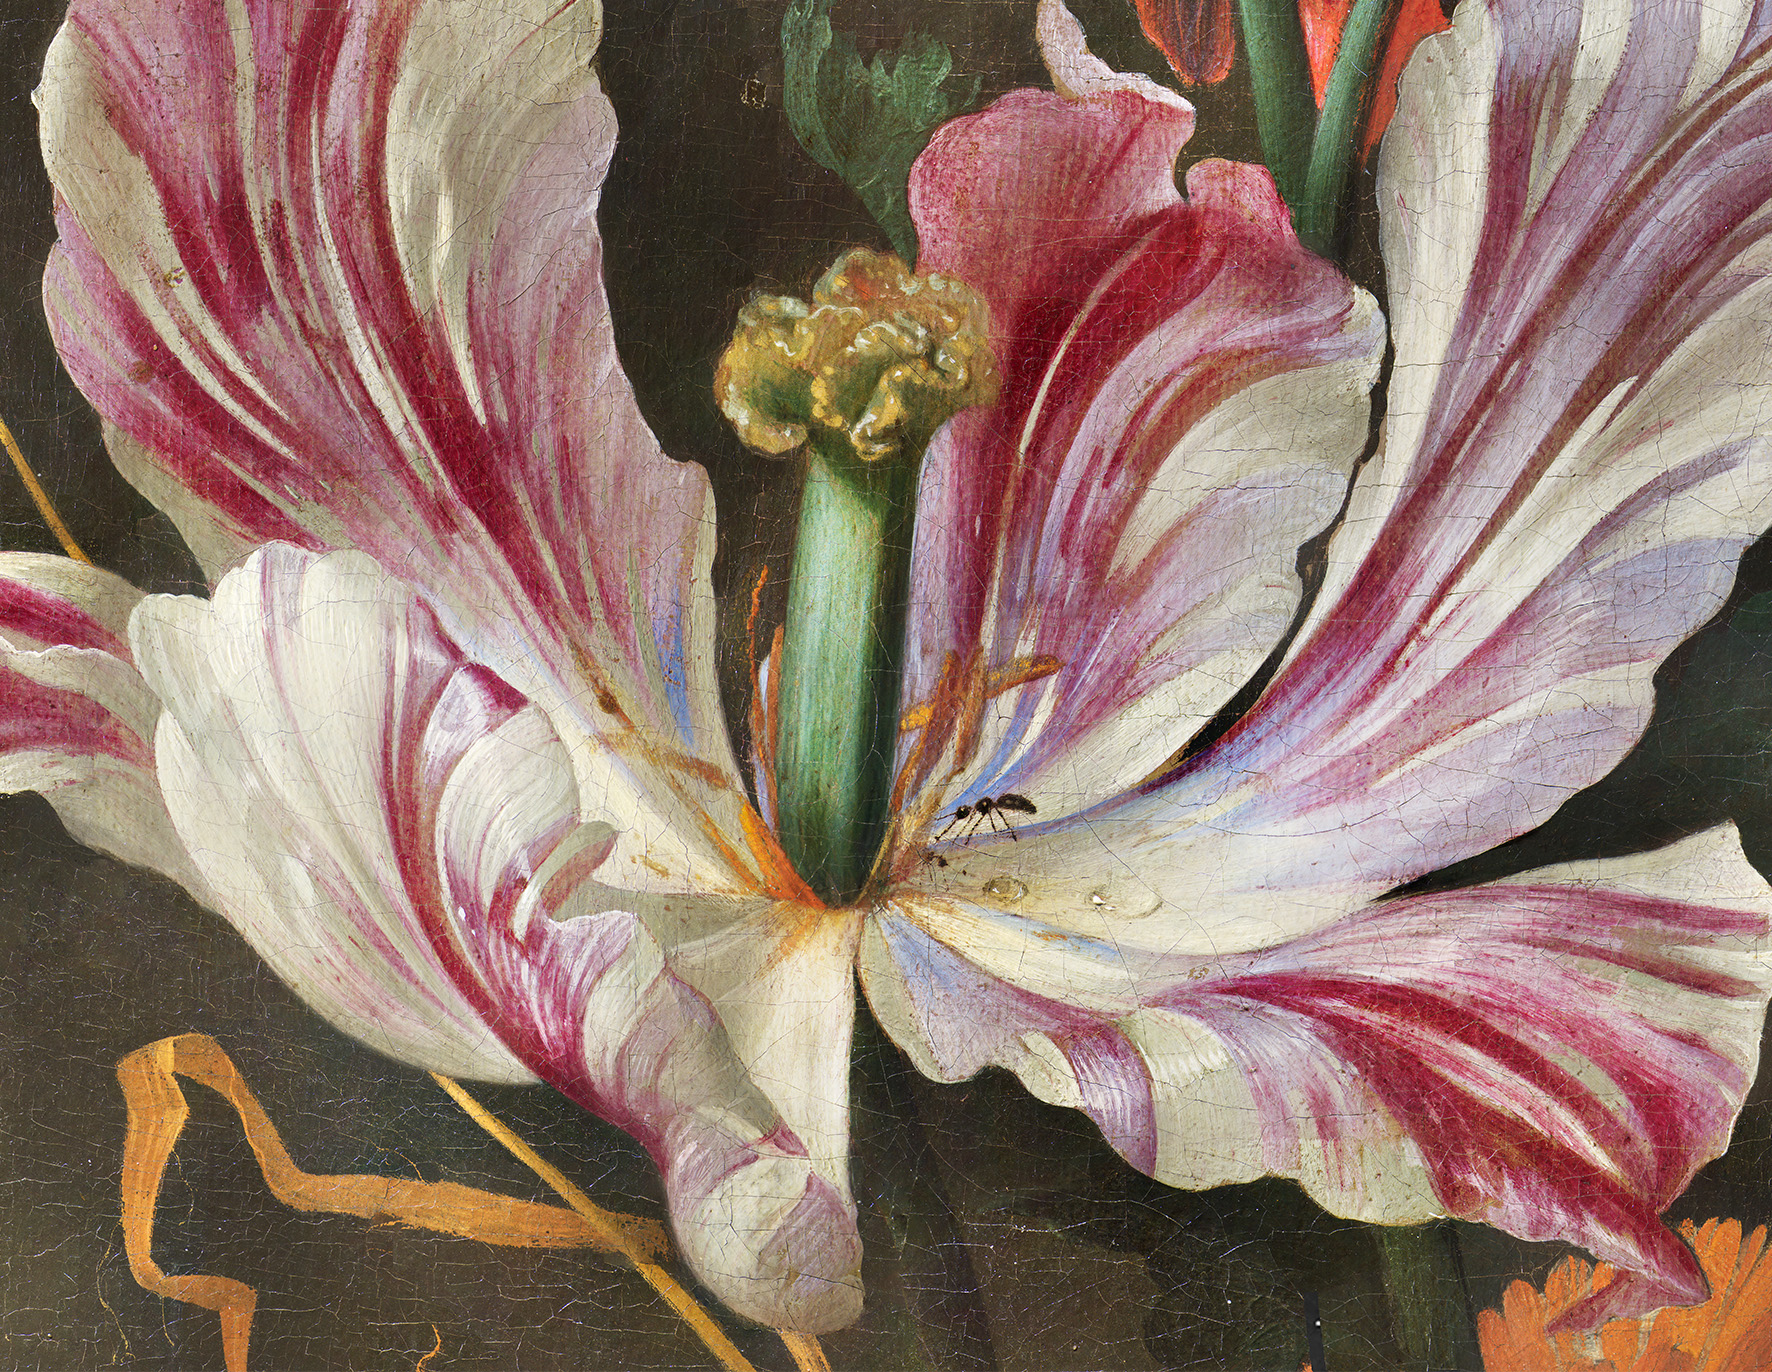 Mikroskopische Aufnahme eines Details des Gemäldes „Blumenstillleben“ von Jan Davidsz. de Heem,
um 1655, Innsbruck, (Foto: Tiroler Landesmuseen,
Cristina Thieme)